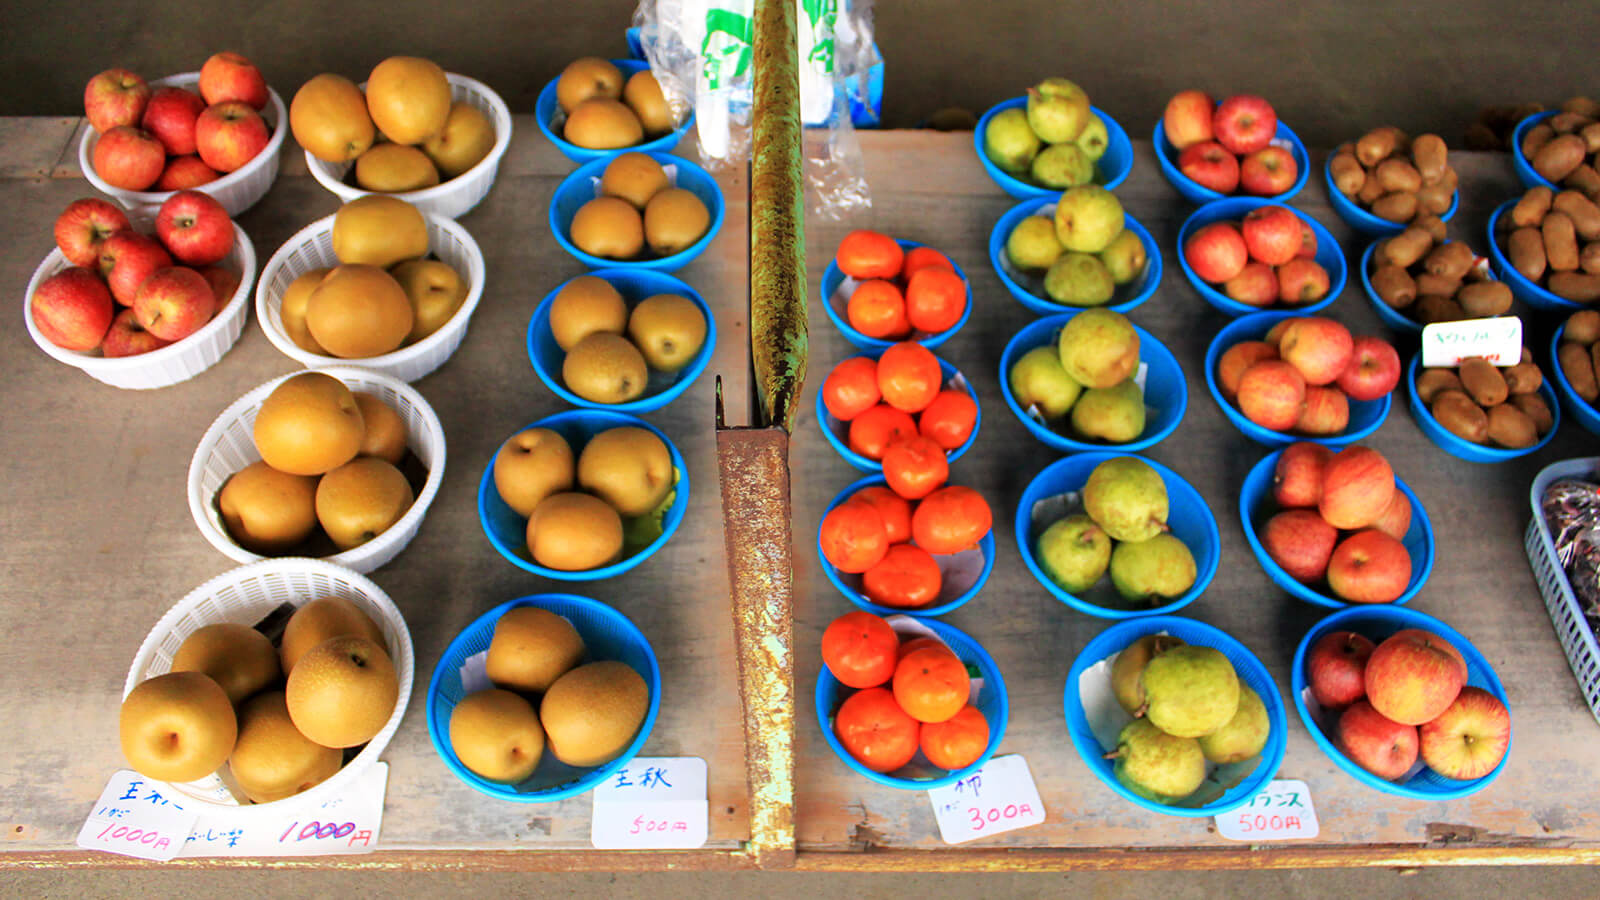 สวนผลไม้มุโรโนอิ (ประสบการณ์การเก็บลูกแพร์ และแอปเปิ้ล)